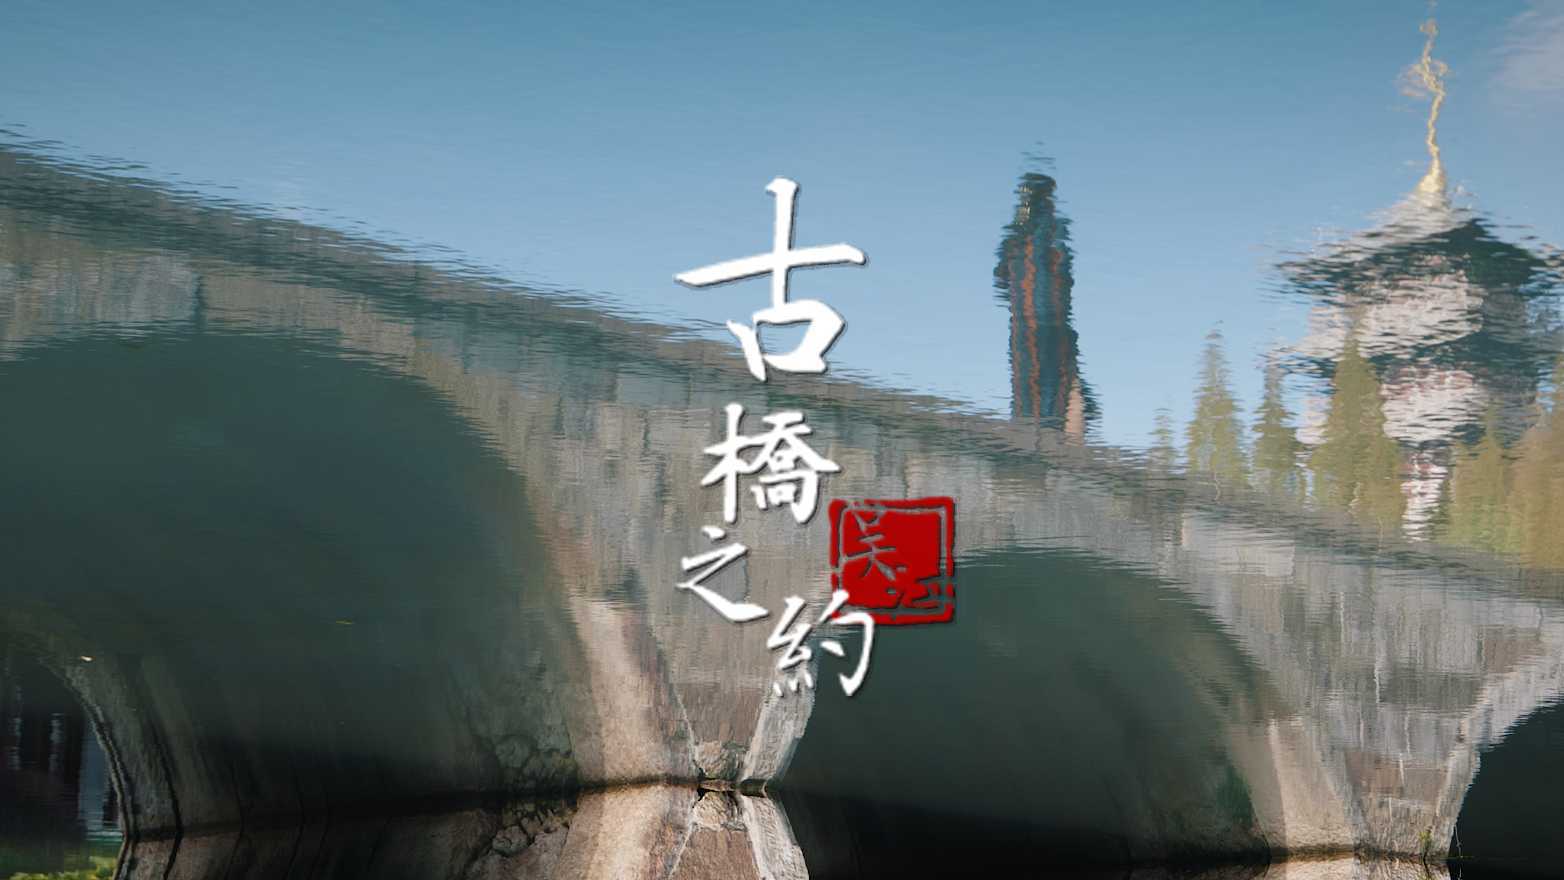 历史遗产`苏州古桥之约